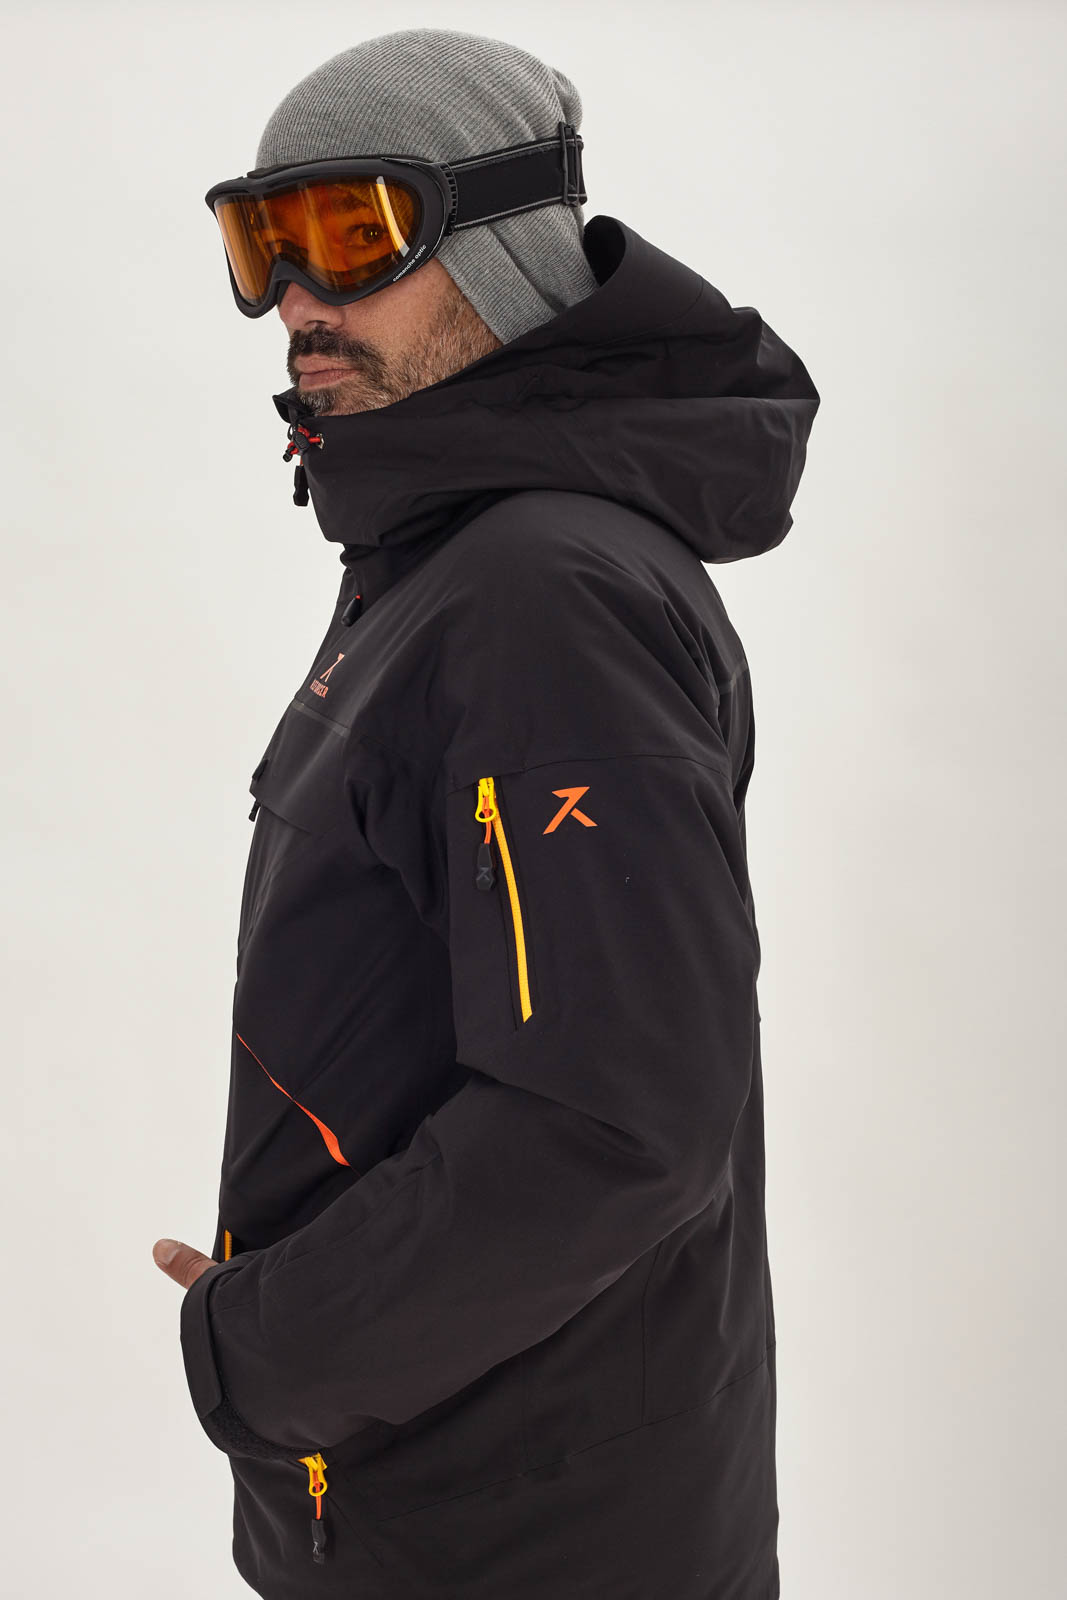 Chaqueta de esquí Off Road | Reforcer, ropa esquí de alta calidad, hecha en Europa